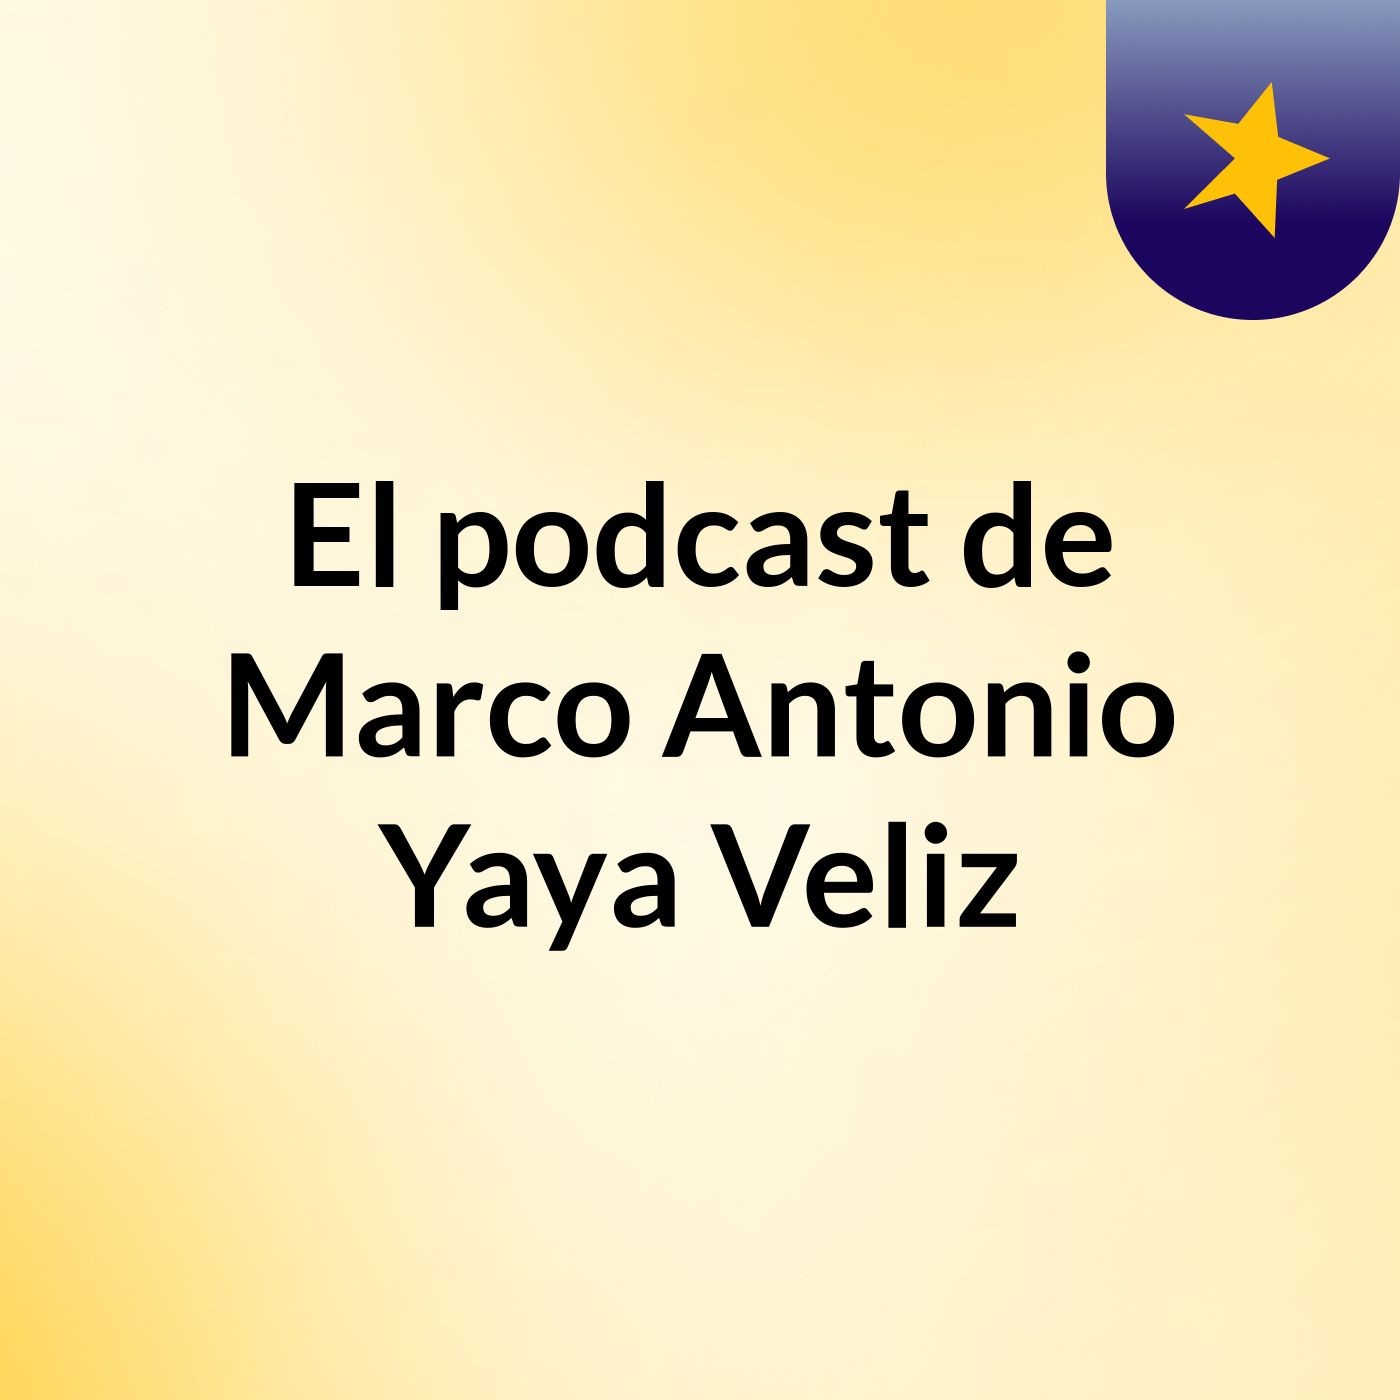 El podcast de Marco Antonio Yaya Veliz